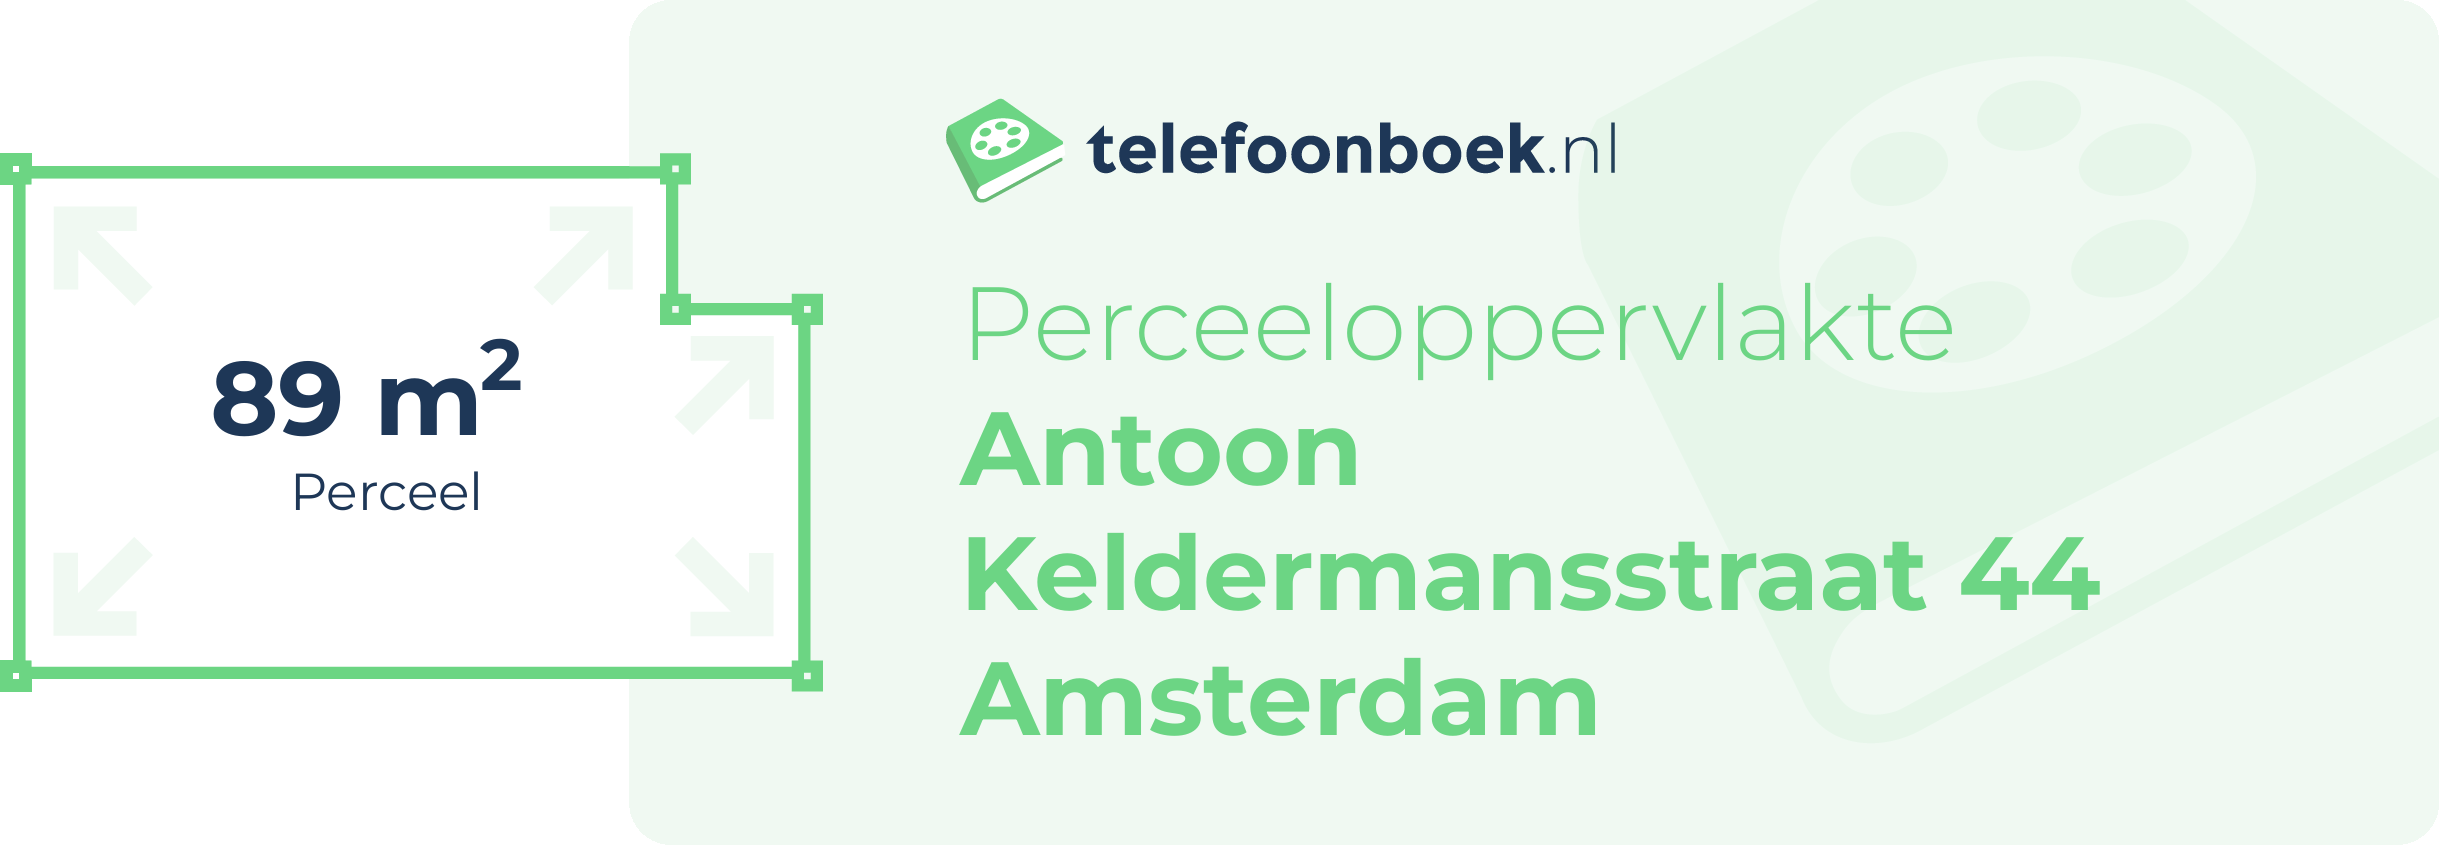 Perceeloppervlakte Antoon Keldermansstraat 44 Amsterdam